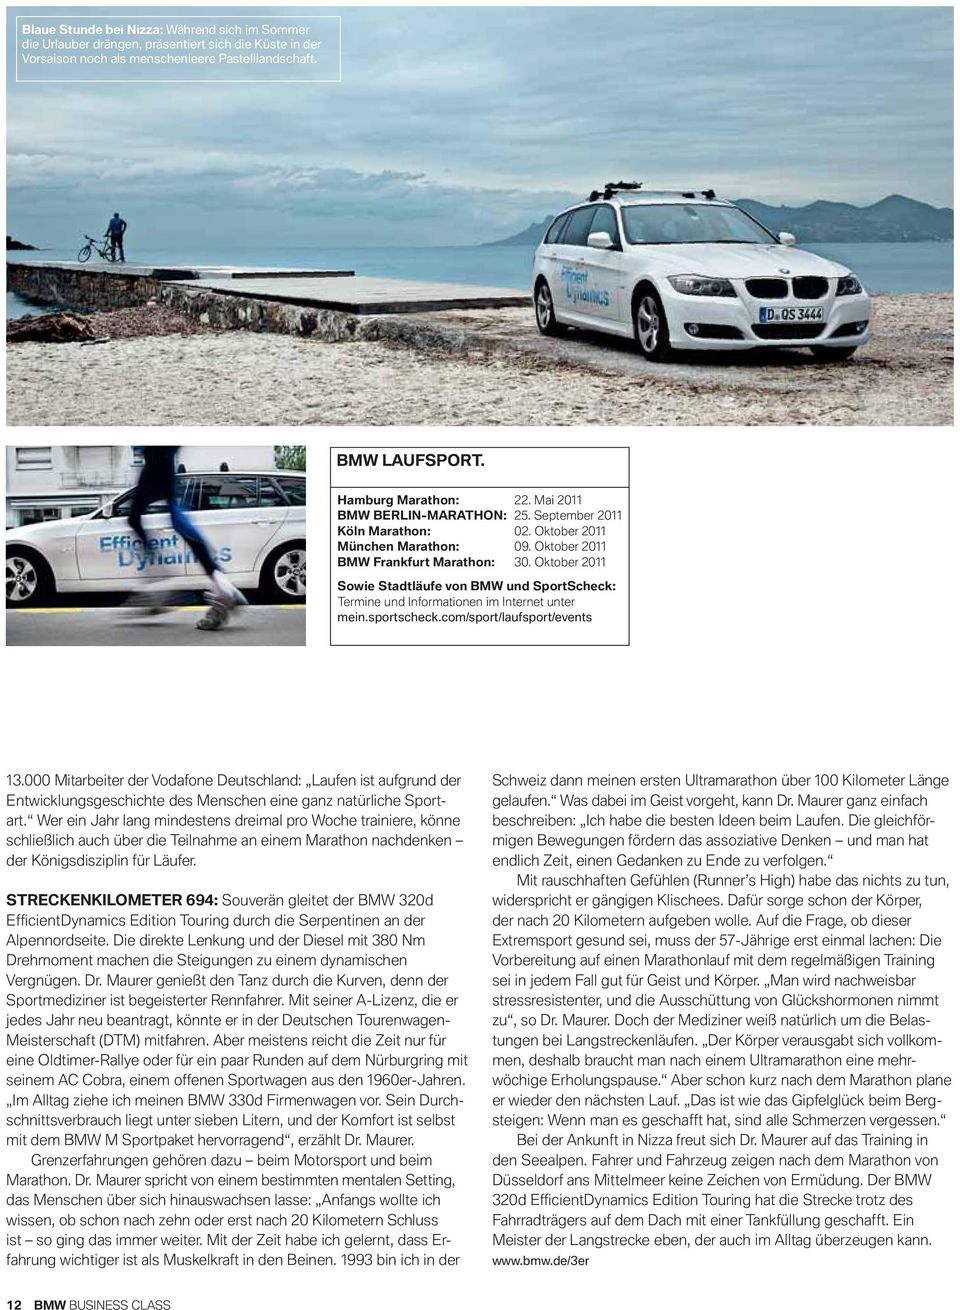 Oktober Sowie Stadtläufe von BMW und SportScheck: Termine und Informationen im Internet unter mein.sportscheck.com/sport/laufsport/events.